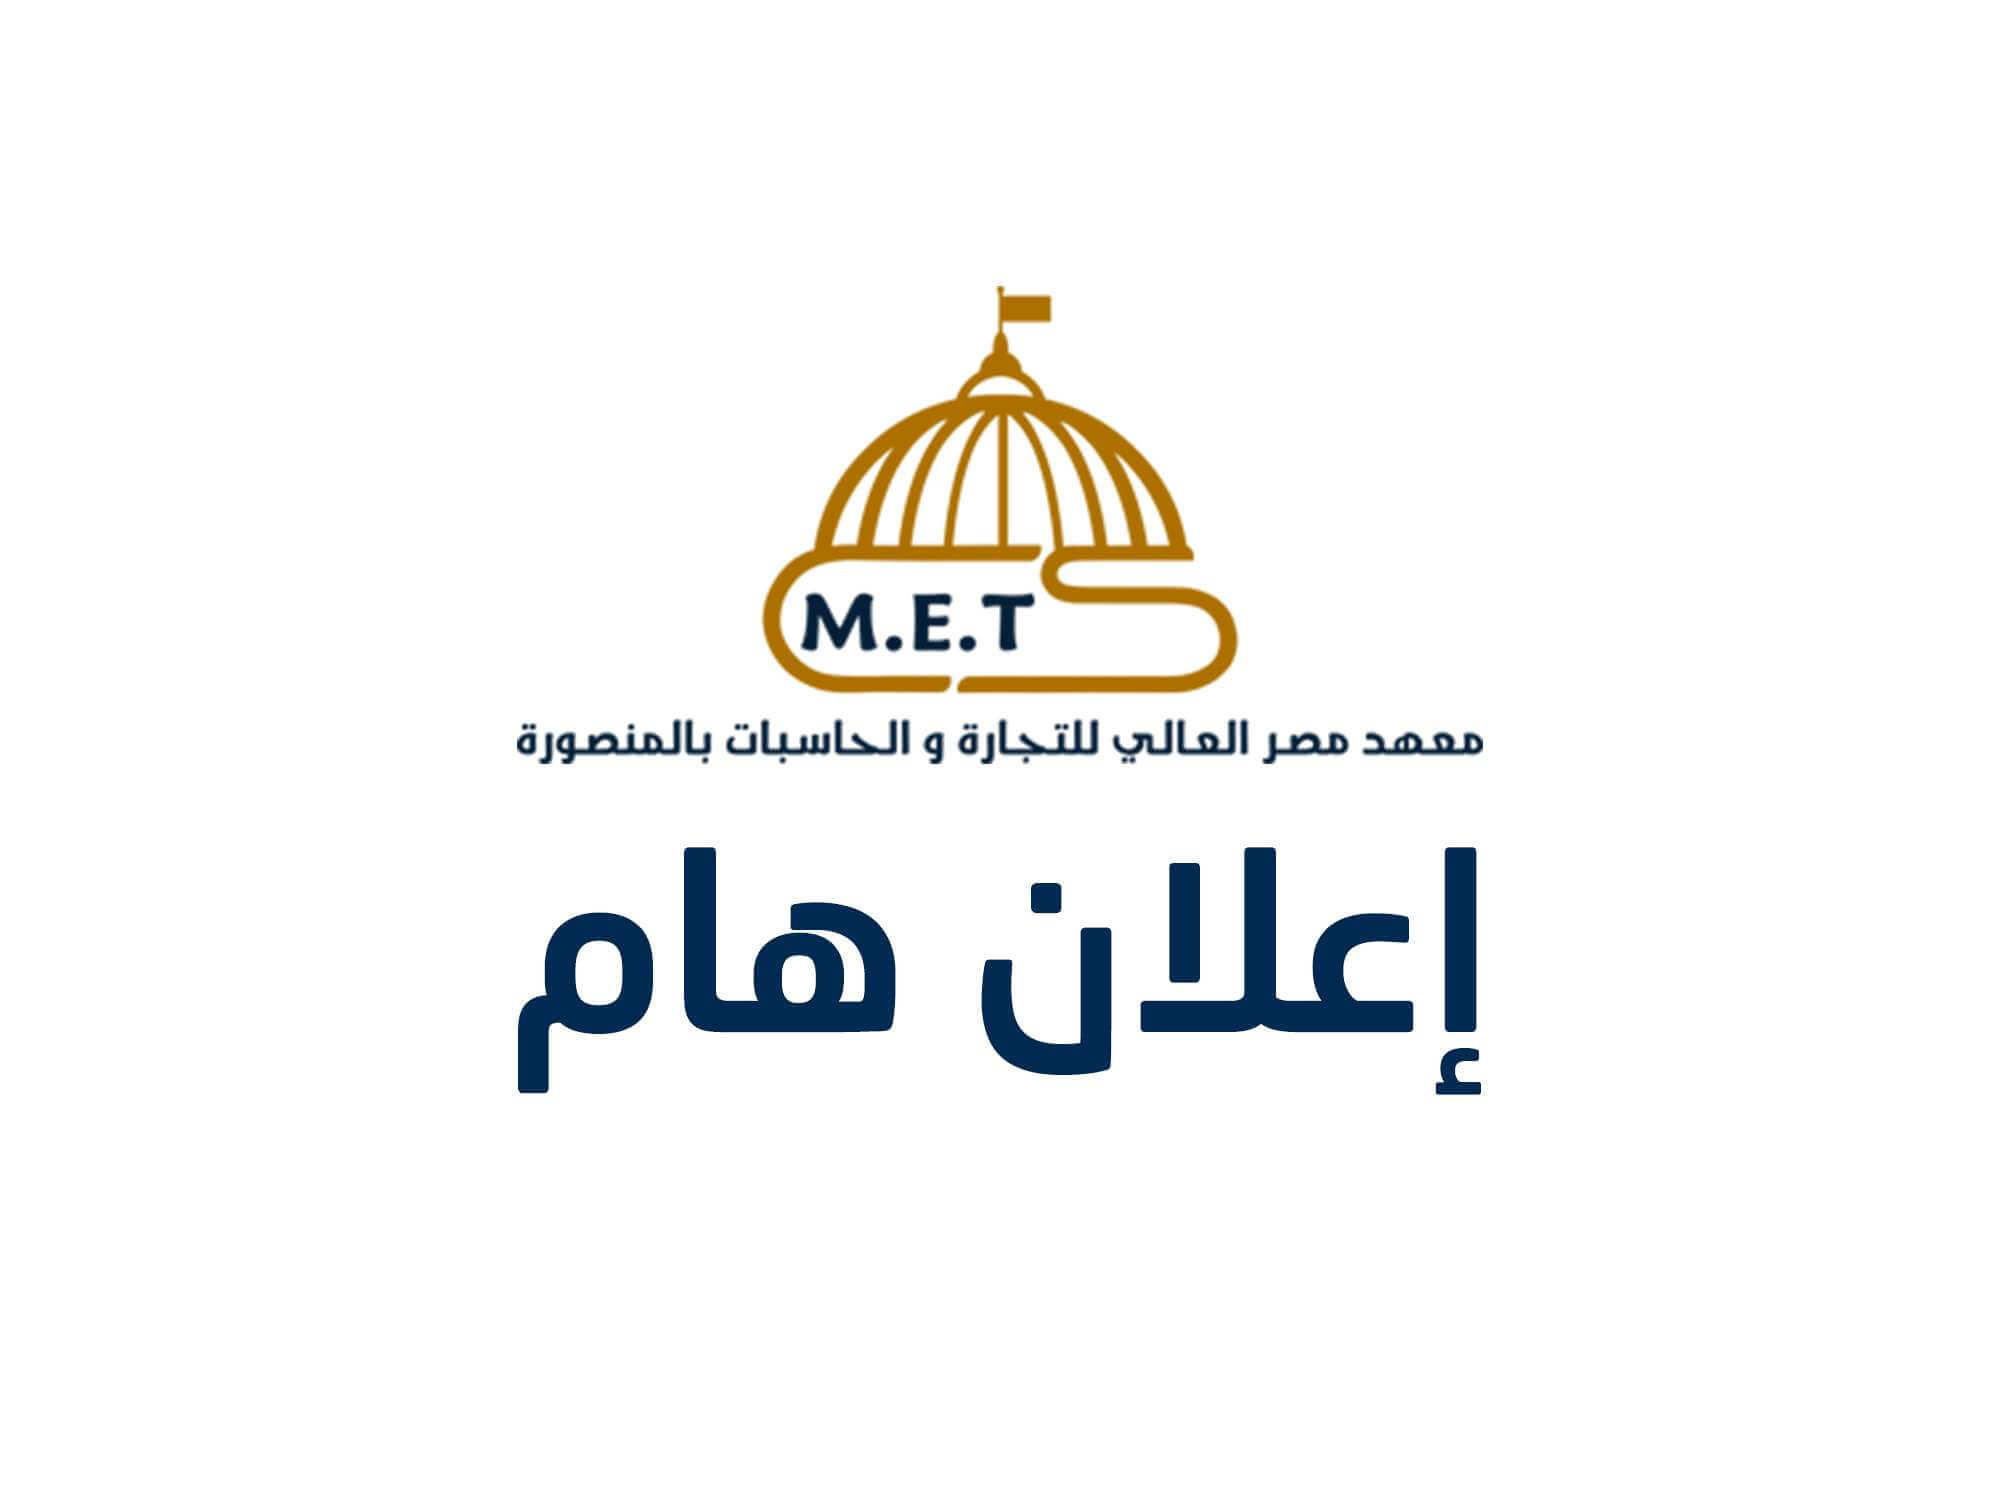 الجروبات الرسمية لمعهد مصر العالي للتجارة والحاسبات بالمنصورة على فيس بوك